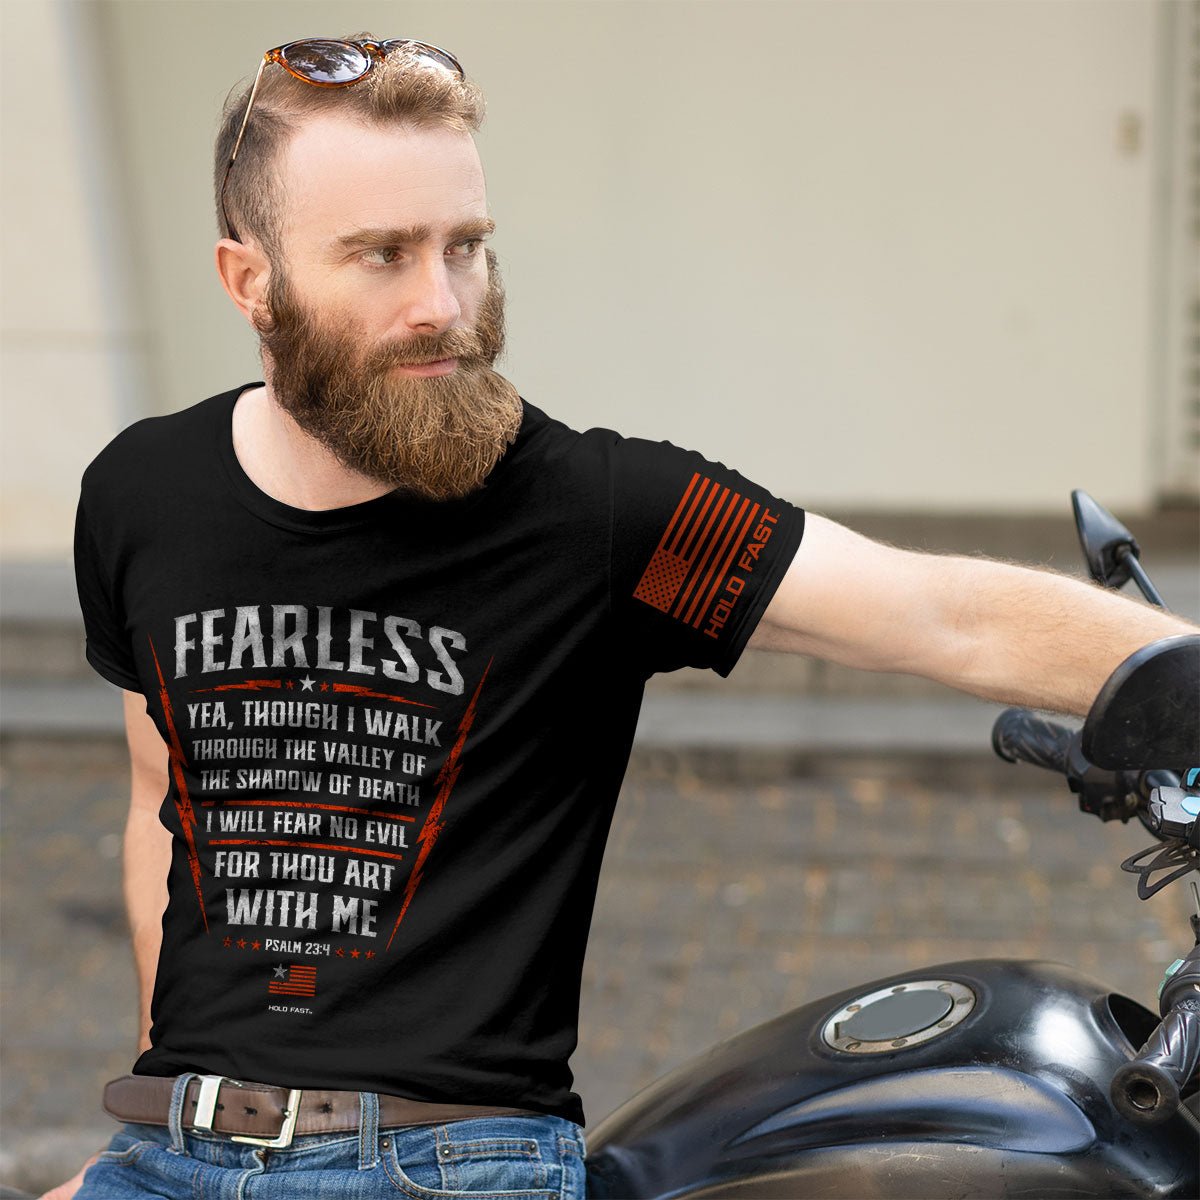 Fearless Psalm 23:4 Mens T-Shirt